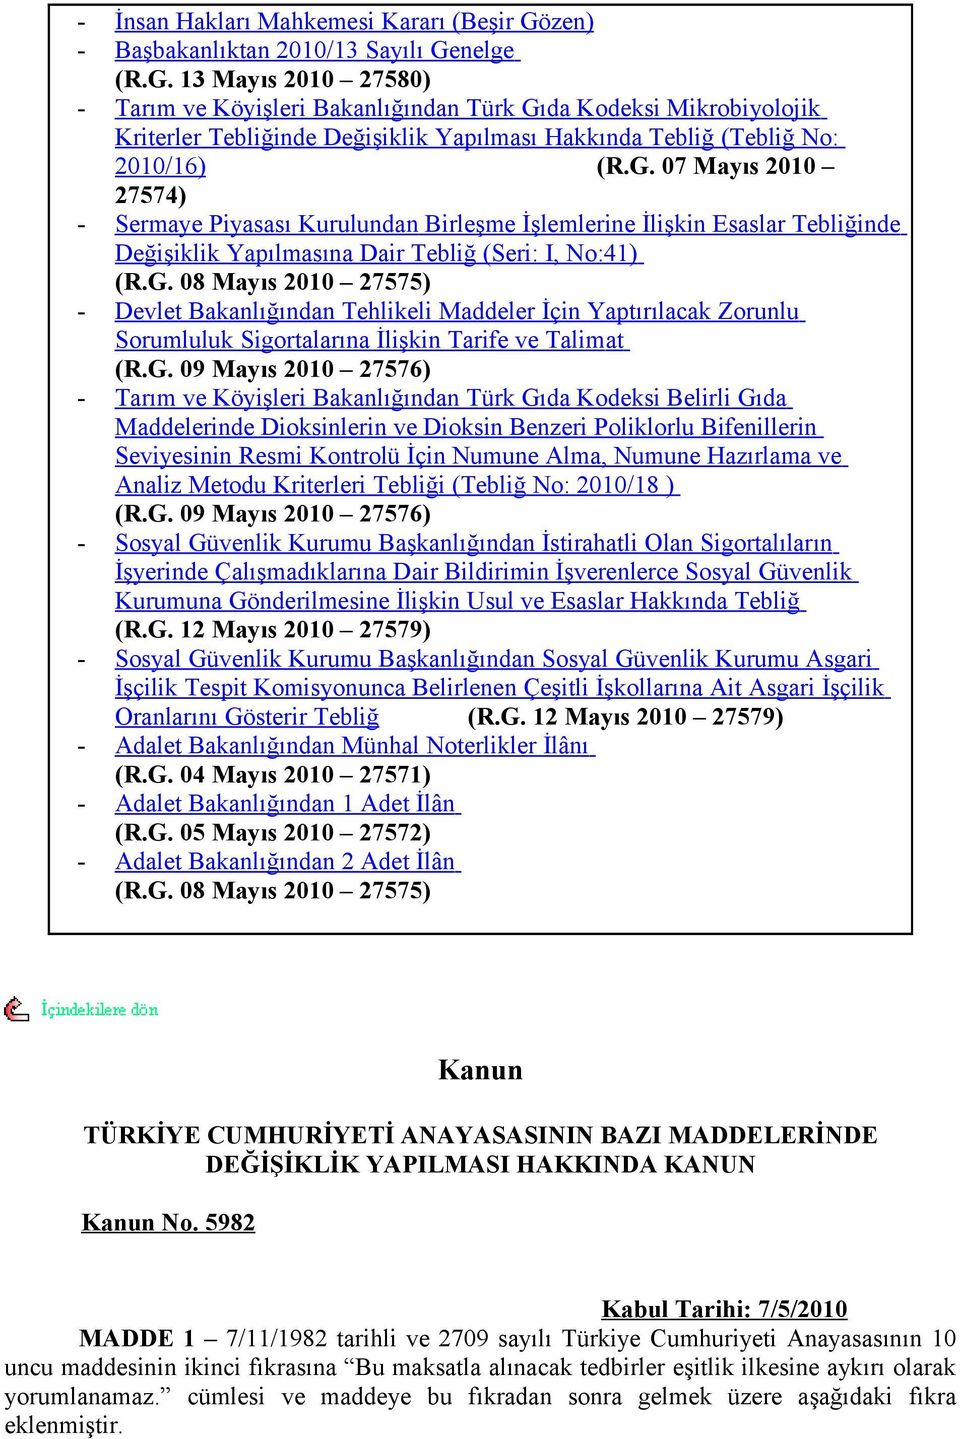 nelge (R.G. 13 Mayıs 2010 27580) - Tarım ve Köyişleri Bakanlığından Türk Gıda Kodeksi Mikrobiyolojik Kriterler Tebliğinde Değişiklik Yapılması Hakkında Tebliğ (Tebliğ No: 2010/16) (R.G. 07 Mayıs 2010 27574) - Sermaye Piyasası Kurulundan Birleşme İşlemlerine İlişkin Esaslar Tebliğinde Değişiklik Yapılmasına Dair Tebliğ (Seri: I, No:41) (R.